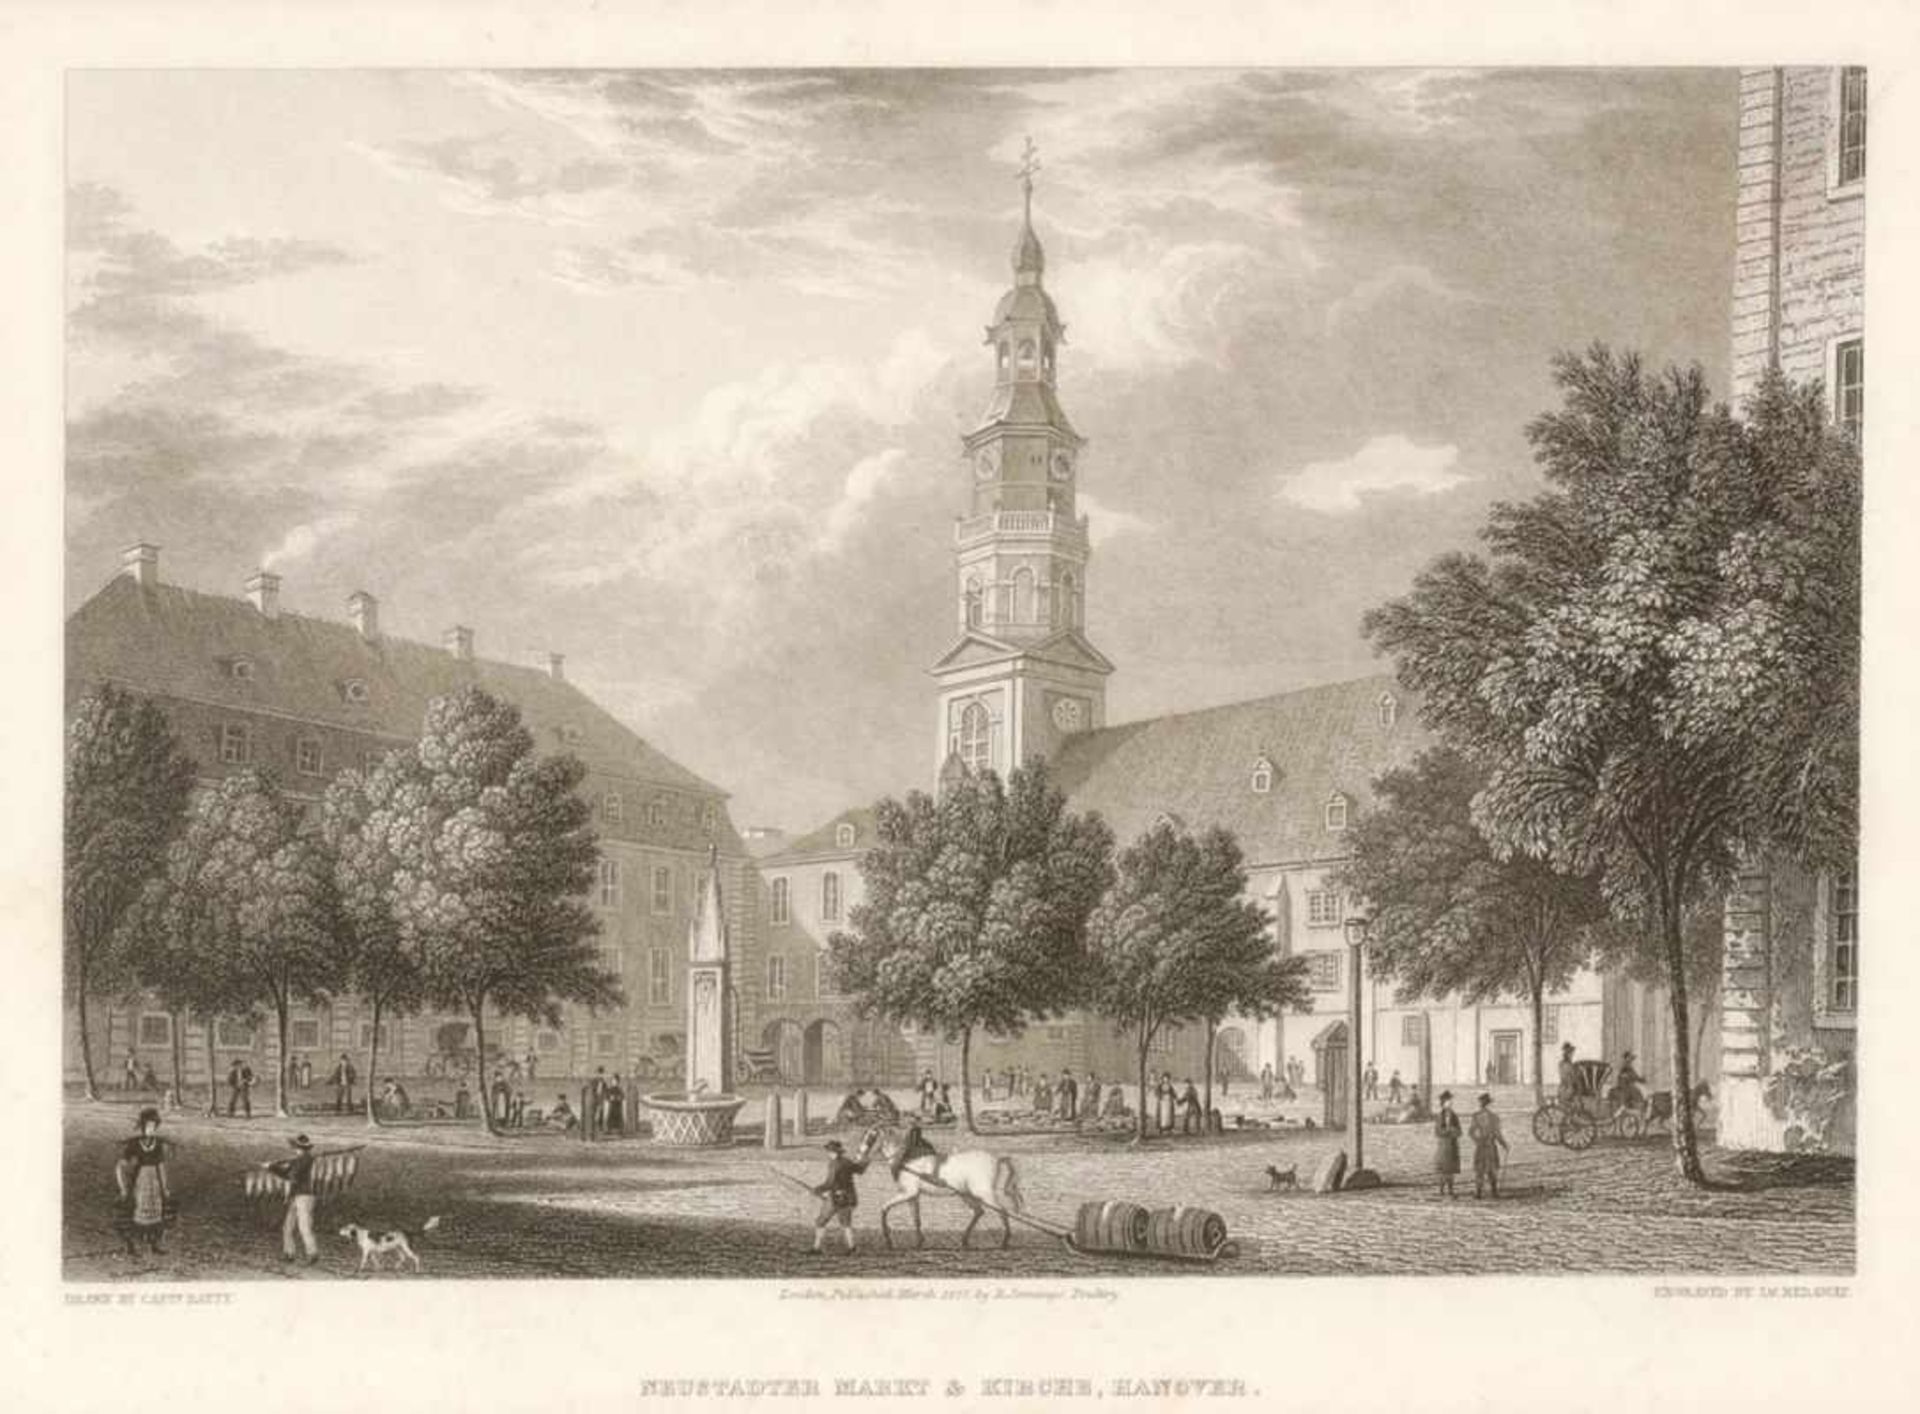 James RedawayGrafiker des 19. Jahrhunderts. - "Neustädter Markt & Kirche, Hanover" - Kupferstich. 14